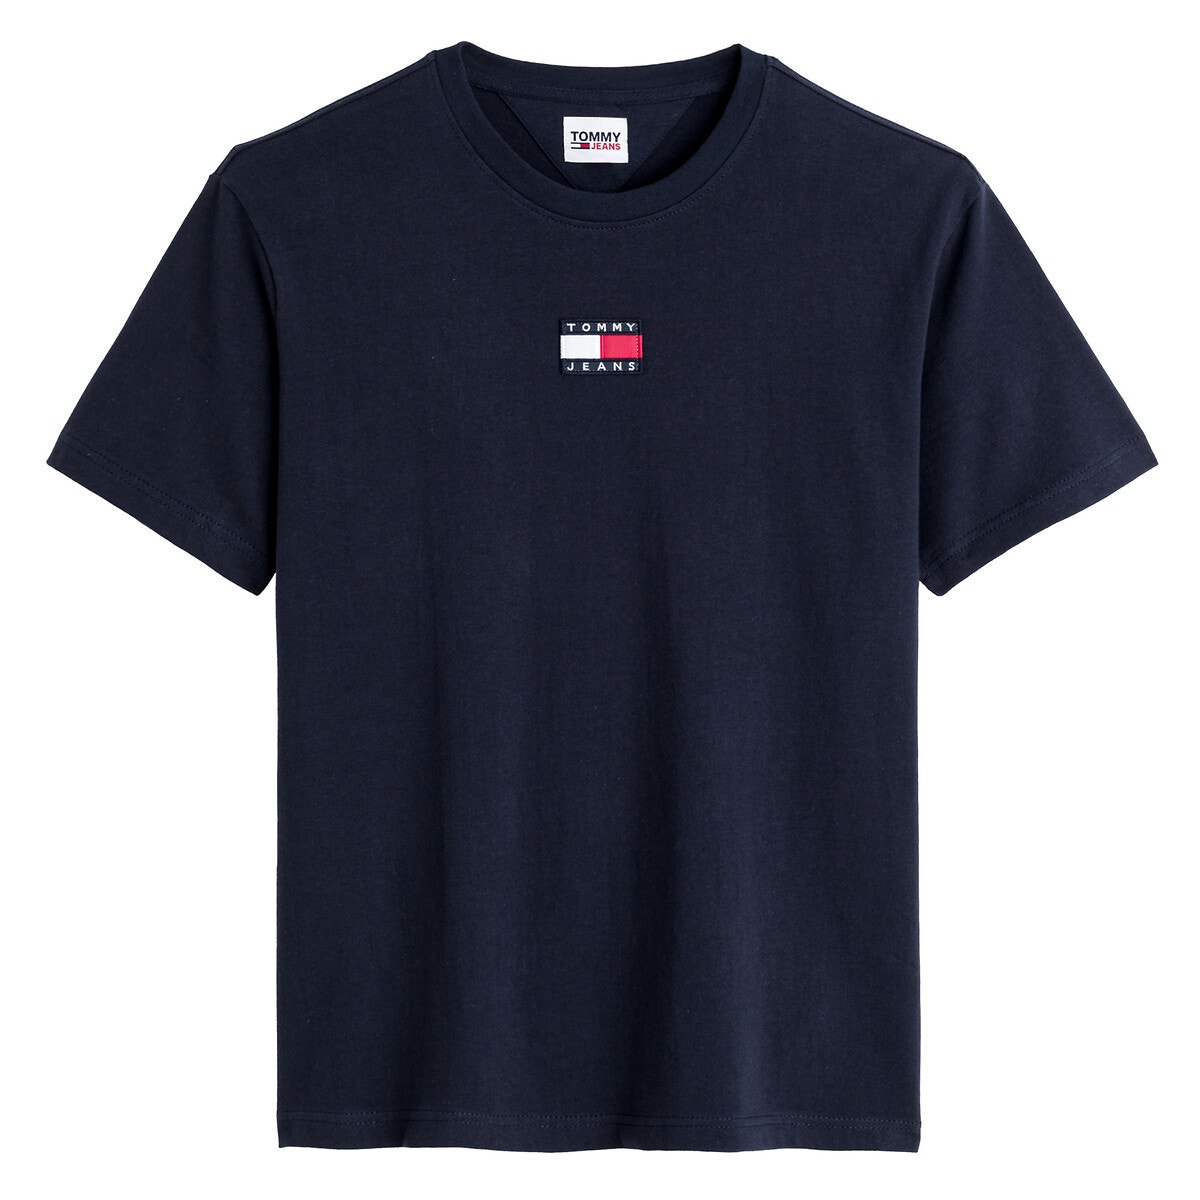 ΑΝΔΡΑΣ | Μπλούζες & Πουκάμισα | T-shirts Κοντομάνικο T-shirt, Tommy Badge